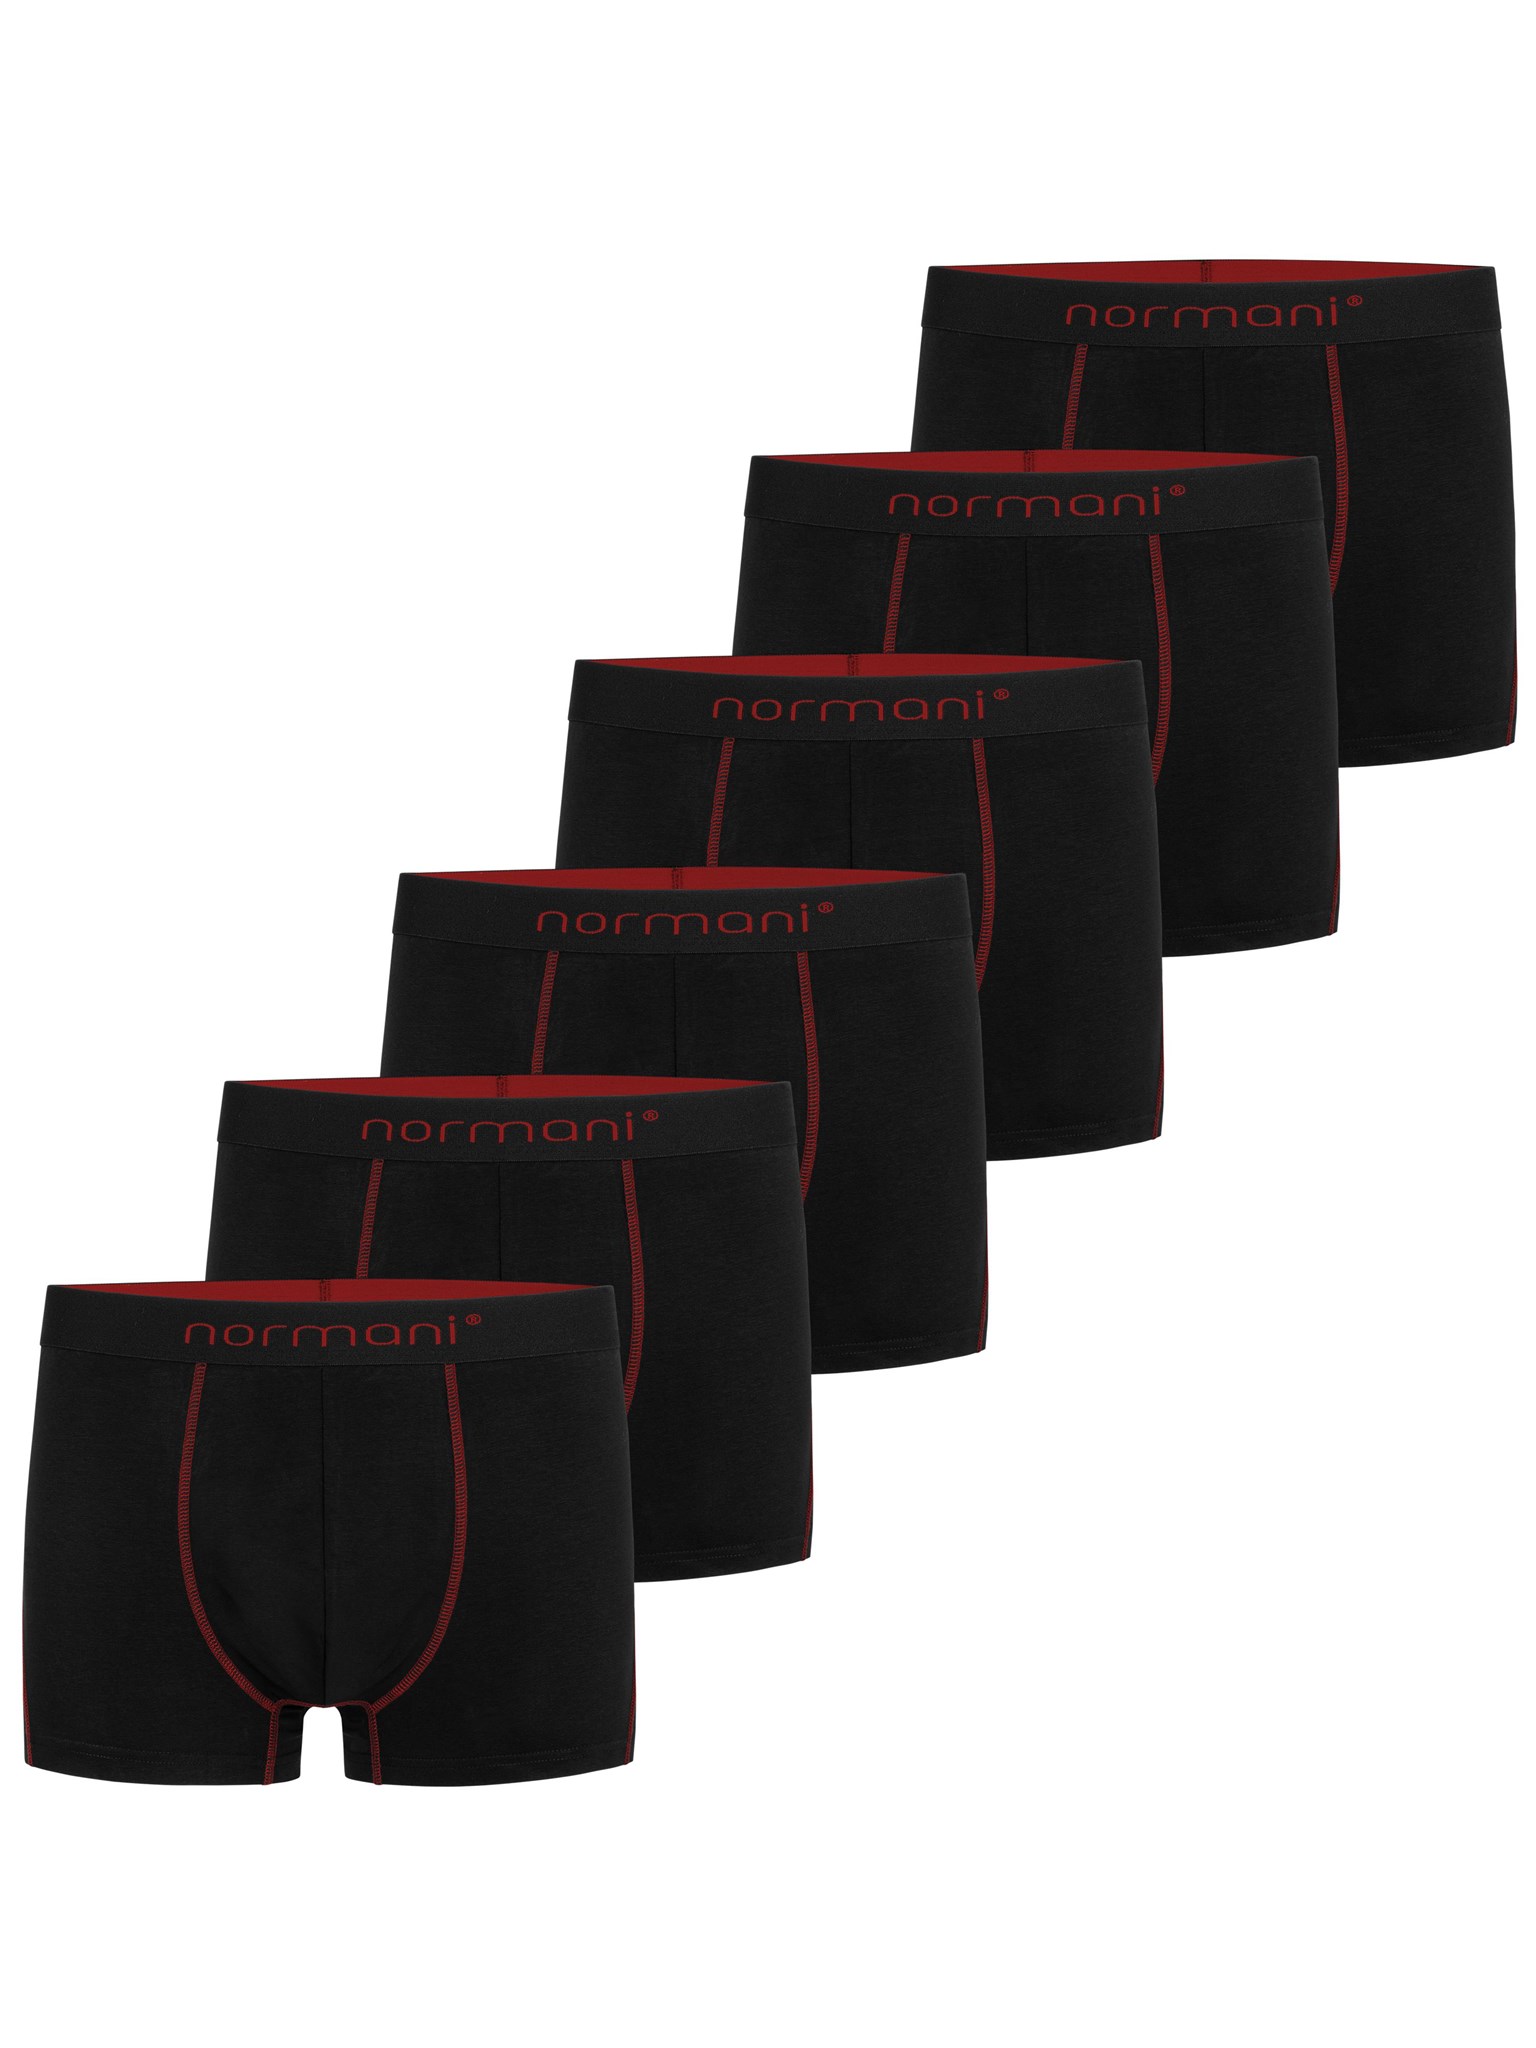 Bild von 6 weiche Boxershorts aus Baumwolle Rot